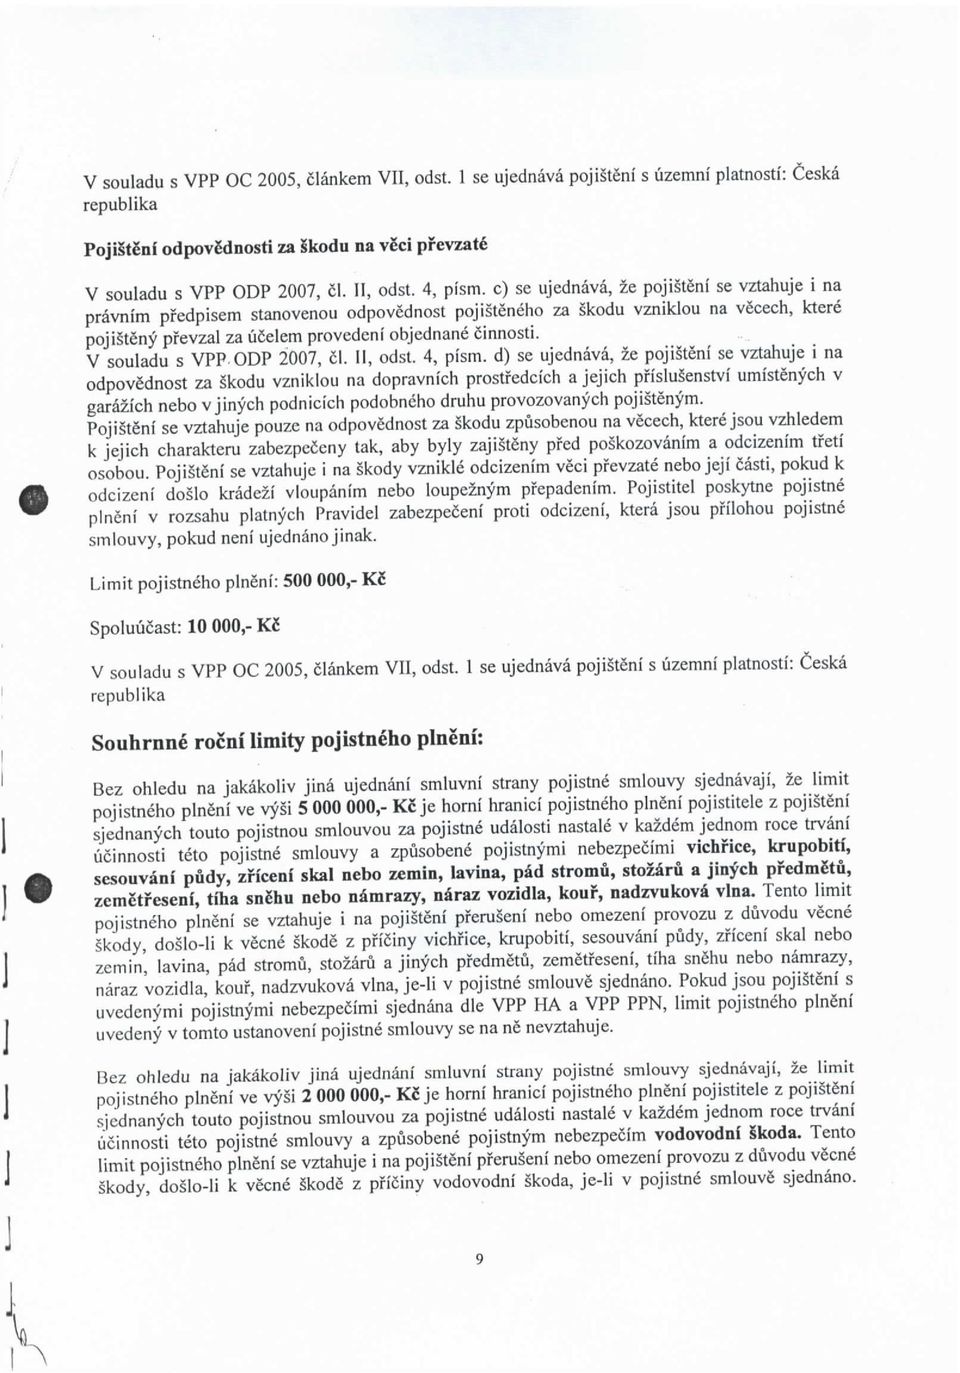 V souladu s VPP-ODP 2007, 1. II, odst. 4, pism.